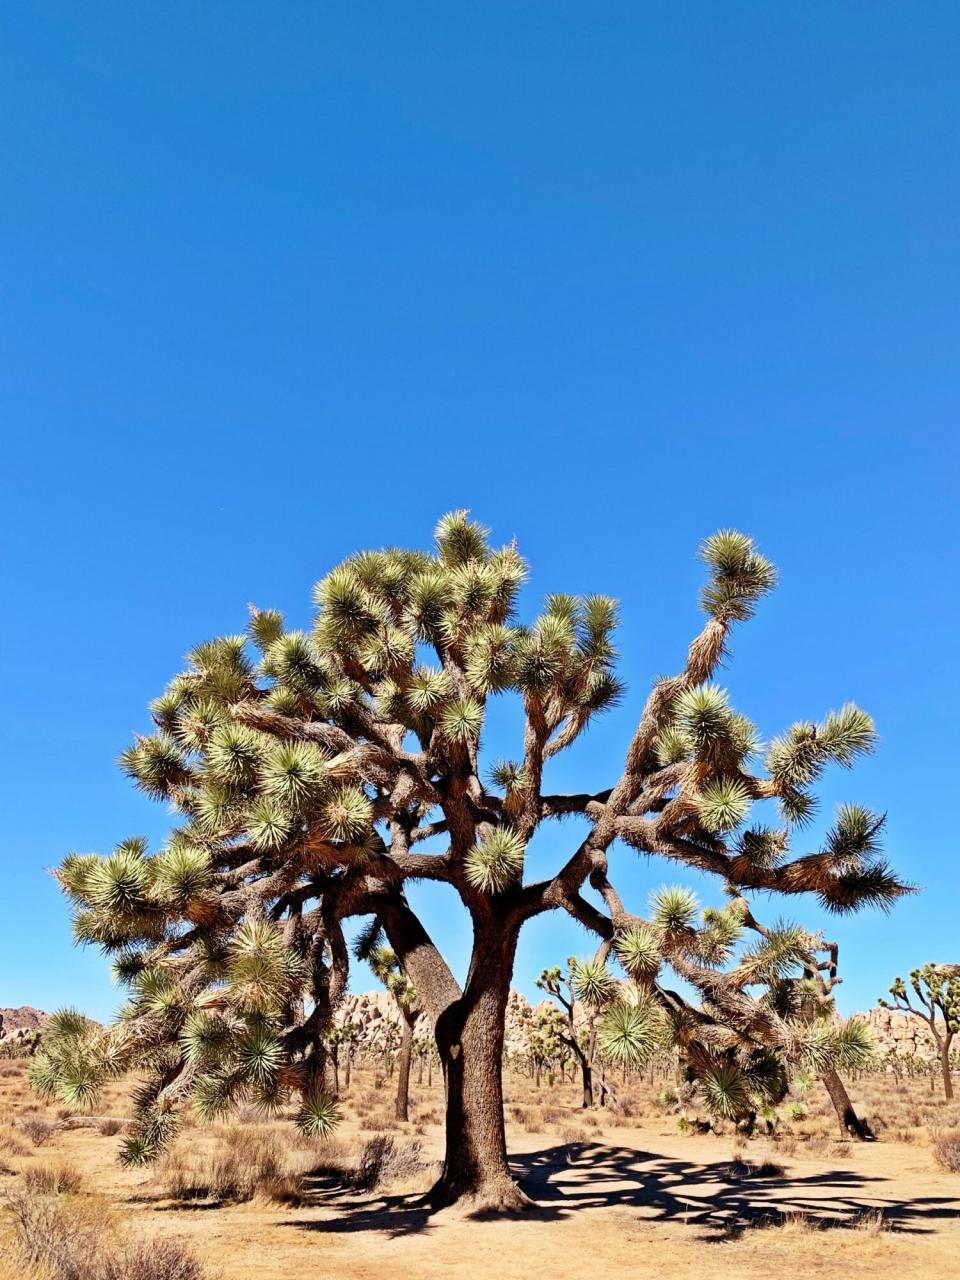 A Joshua tree at Joshua Tree National Park